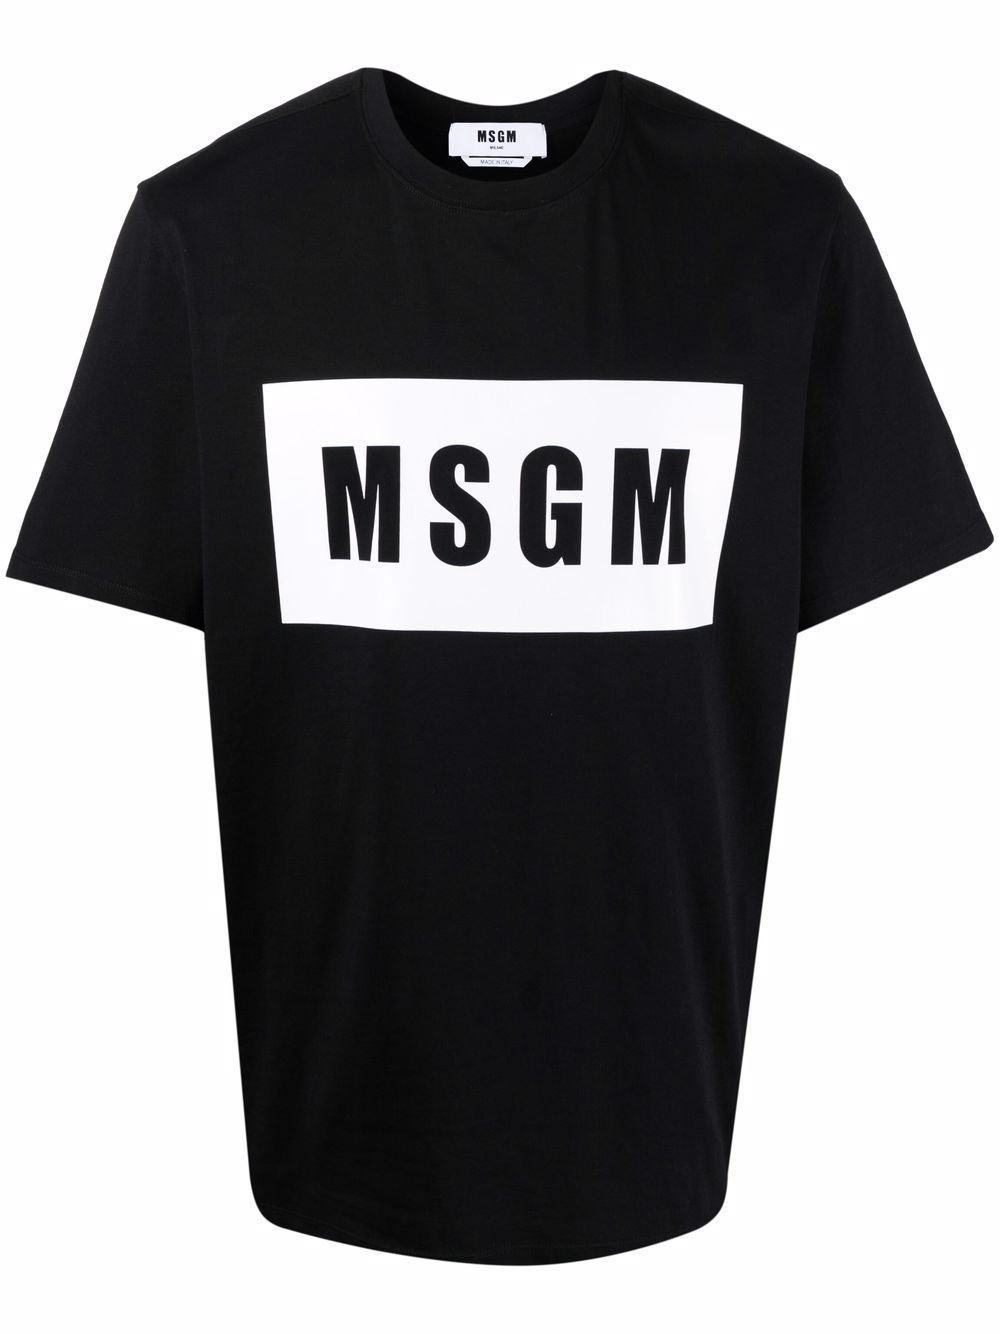 T-shirt in cotone bianco/nero con stampa logo